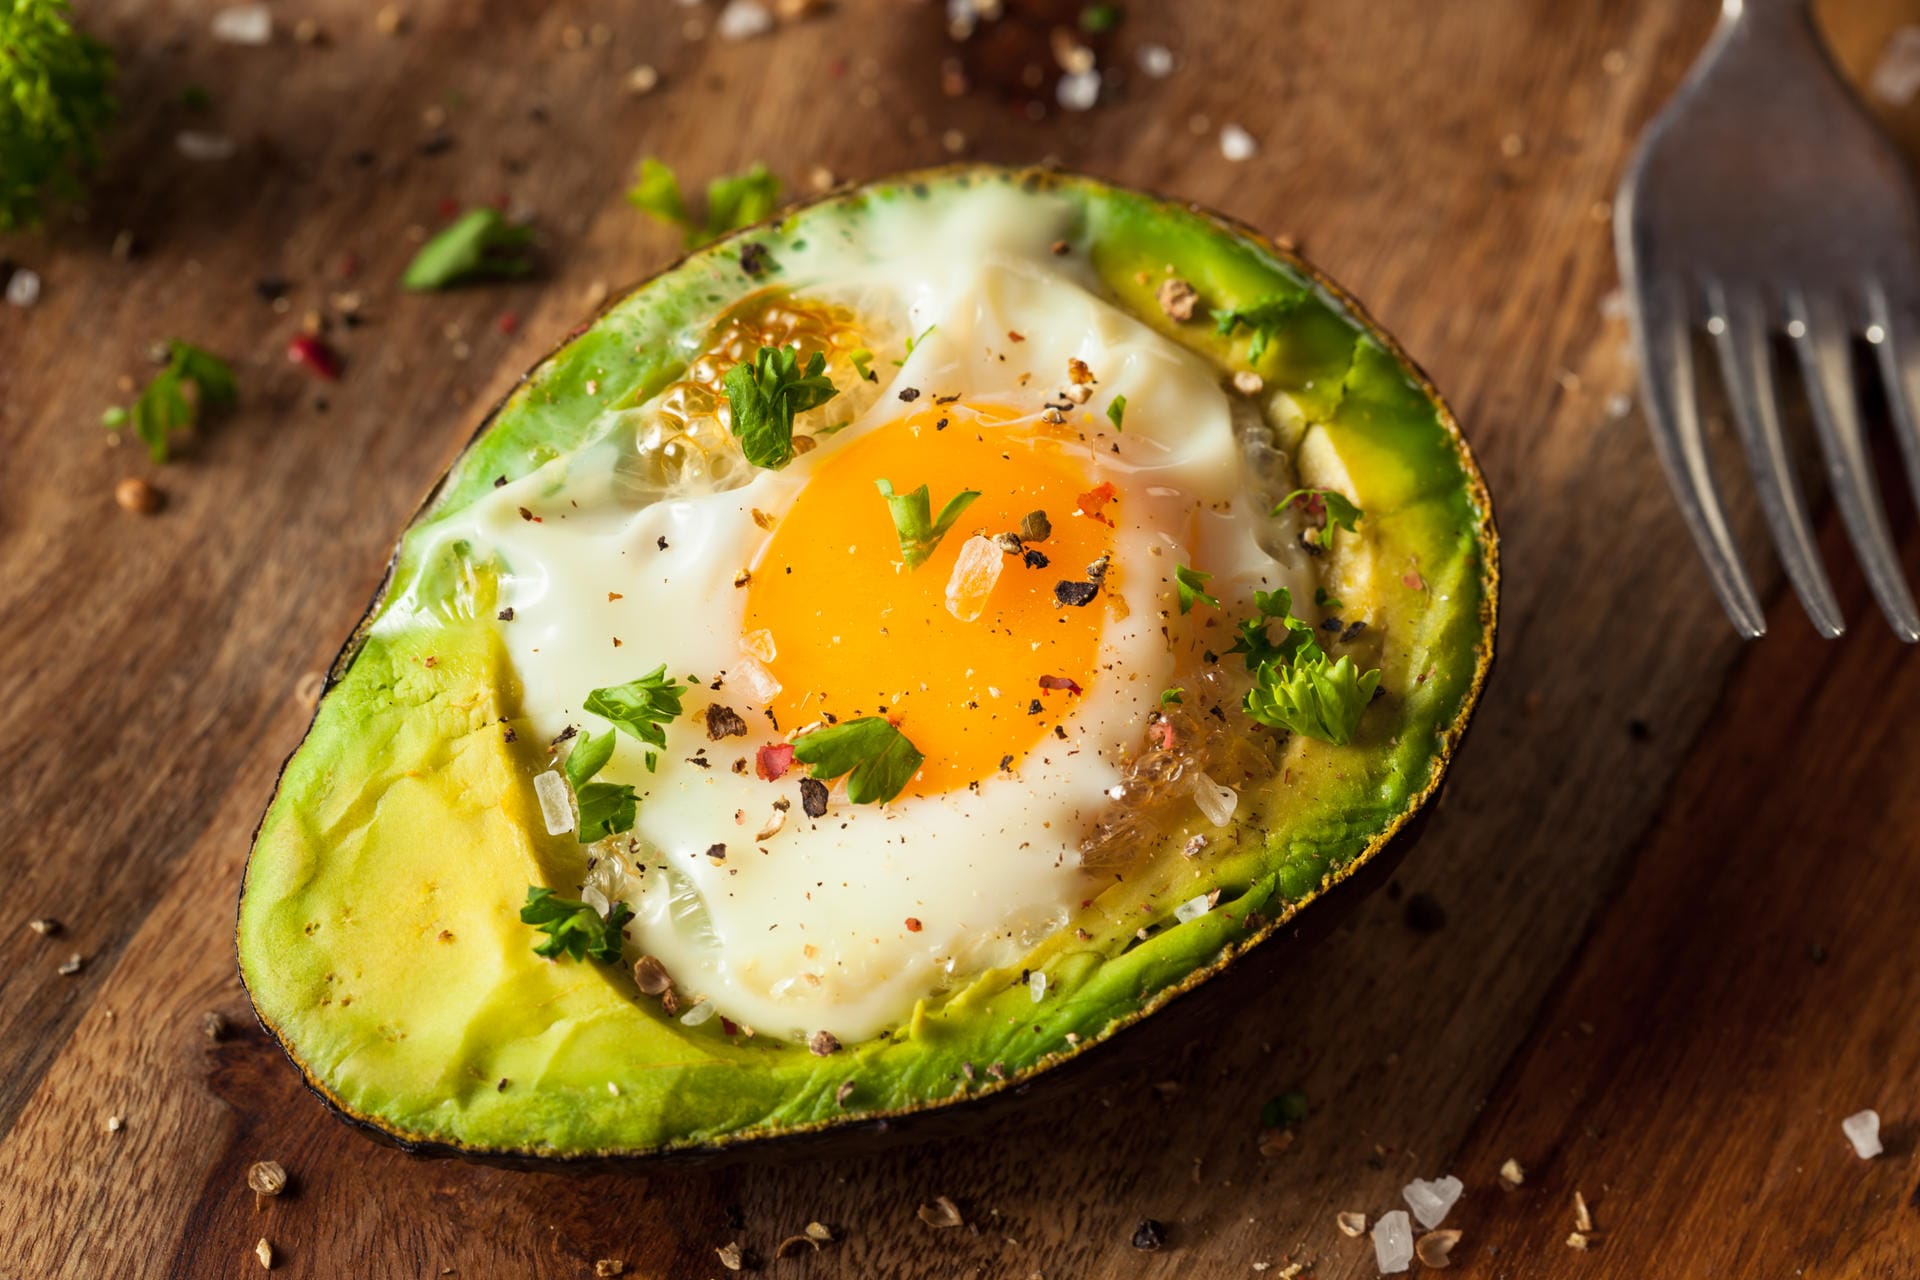 Avocado-Ei: Das vegetarische Gericht lässt sich mit verschiedenen Kräutern variieren.